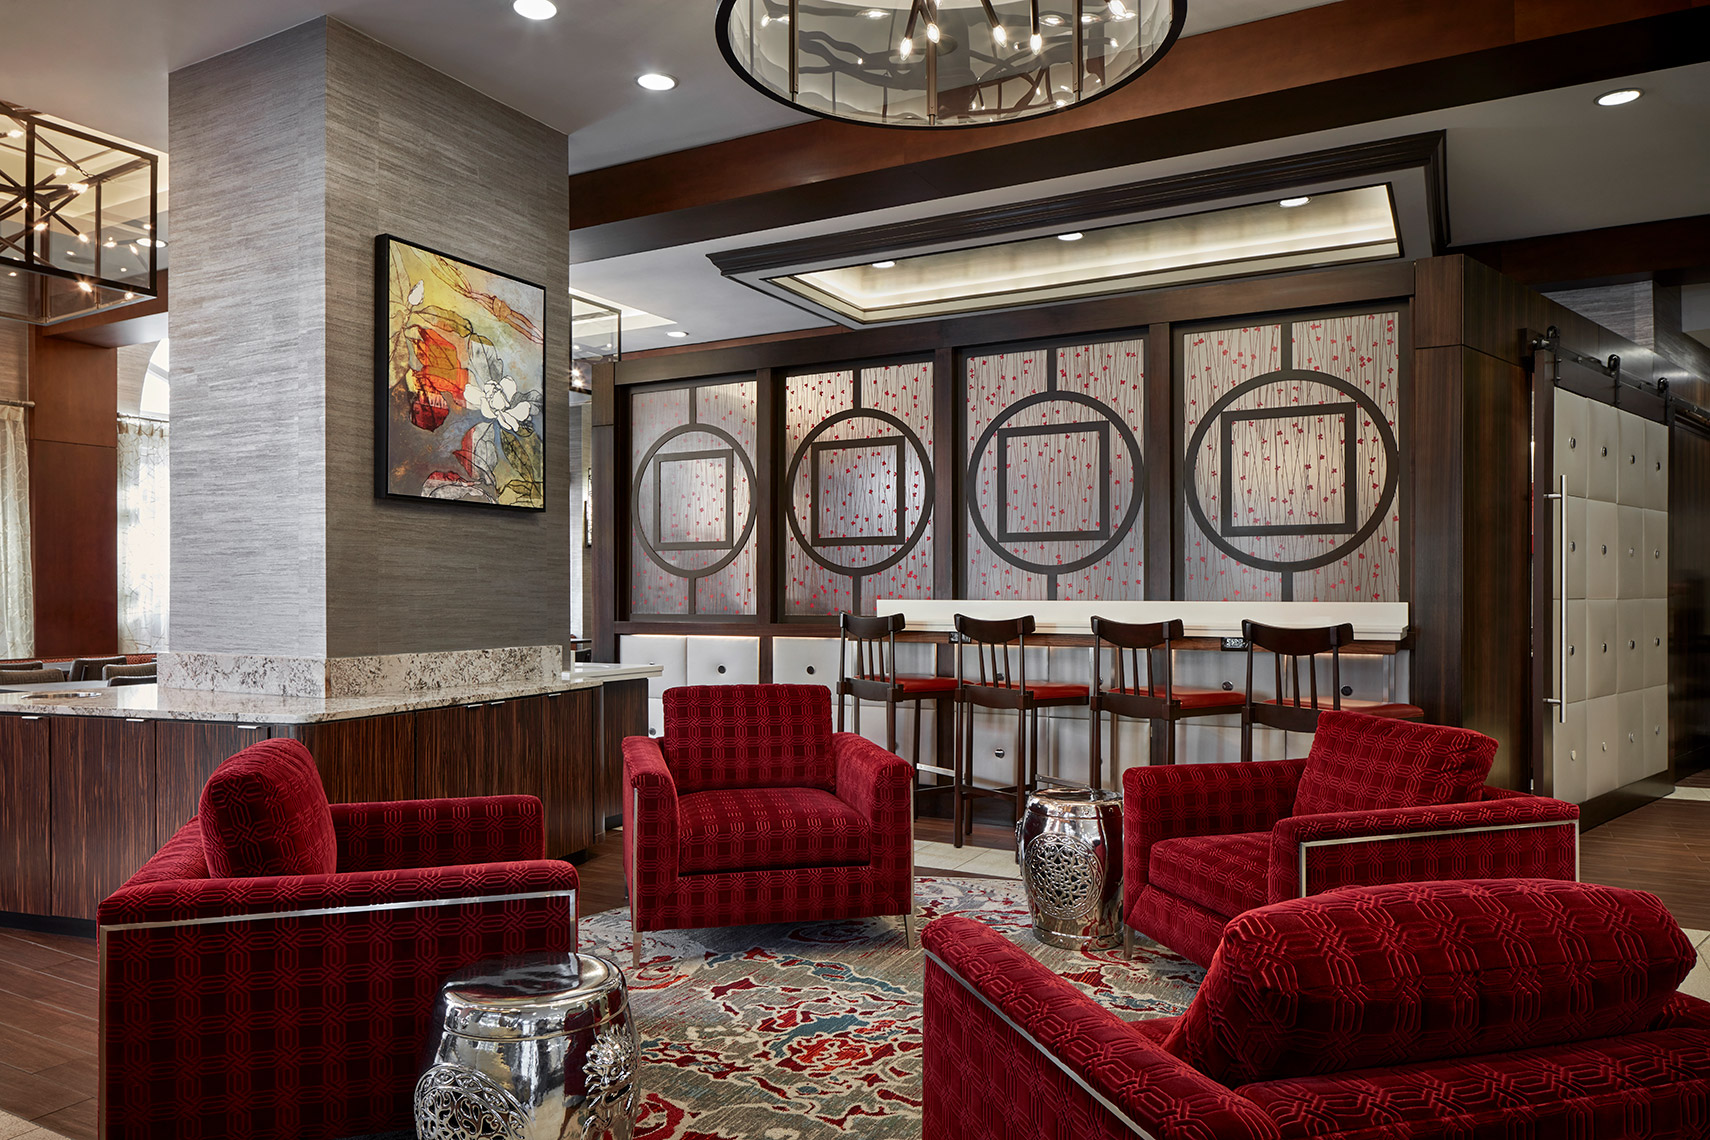 Fairfield Inn & Suites Washington, DC/Downtown - Lobby Seating Area